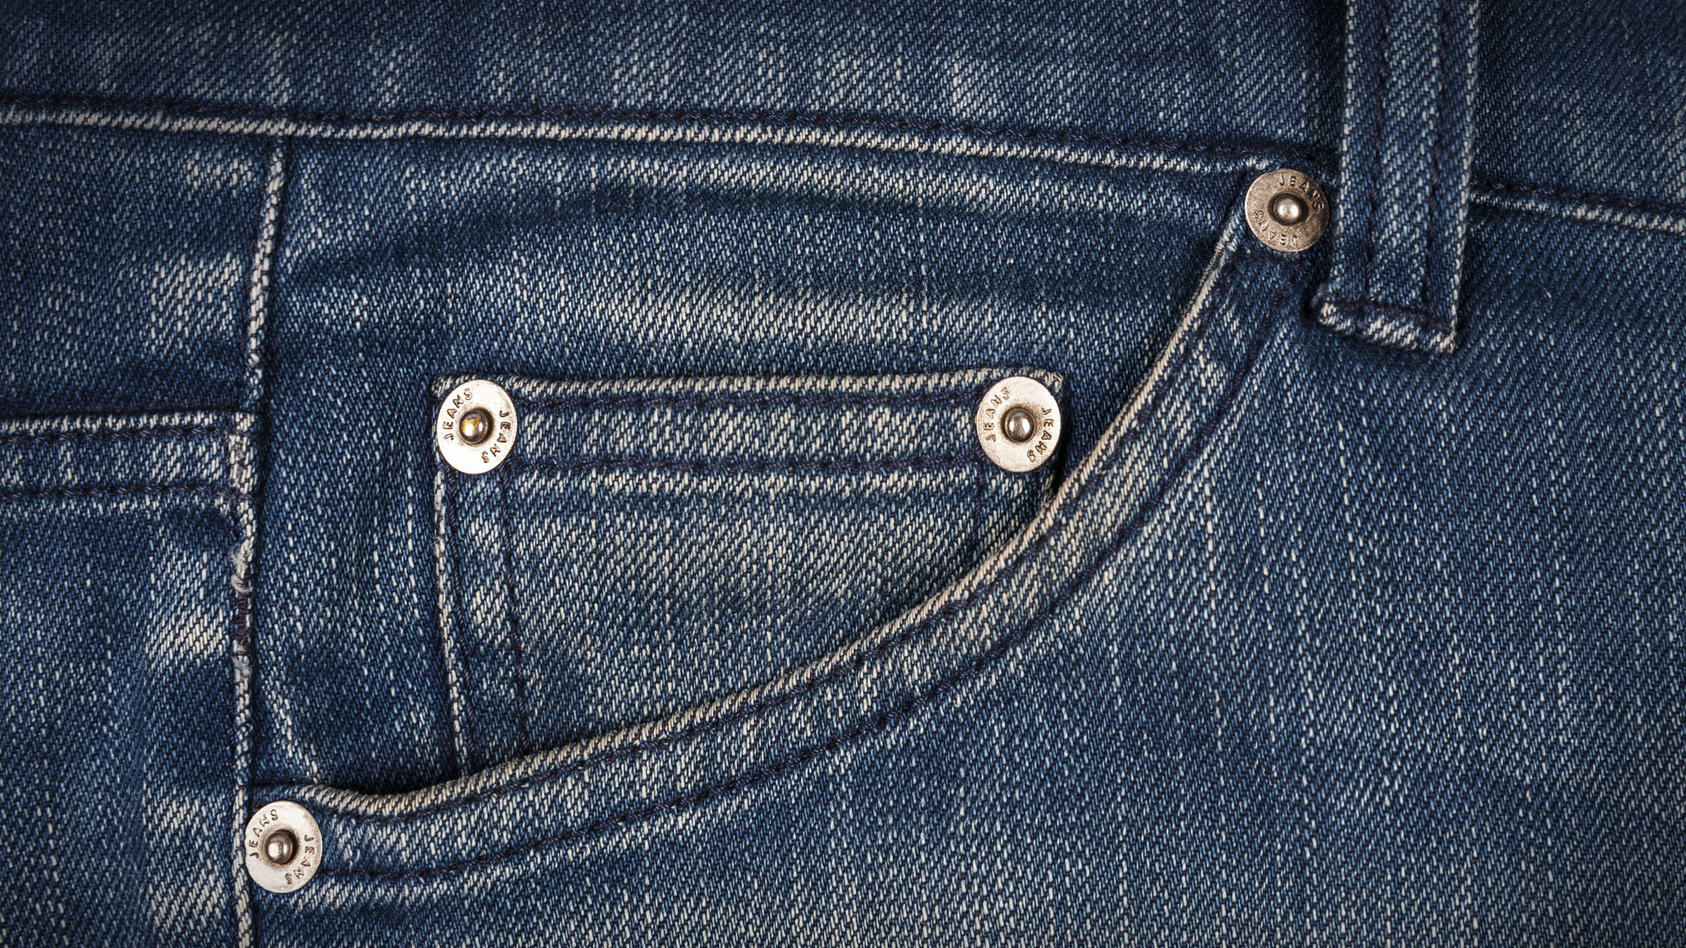 die-funfte-tasche-in-der-jeans-wofur-wurde-die-eigentlich-designt